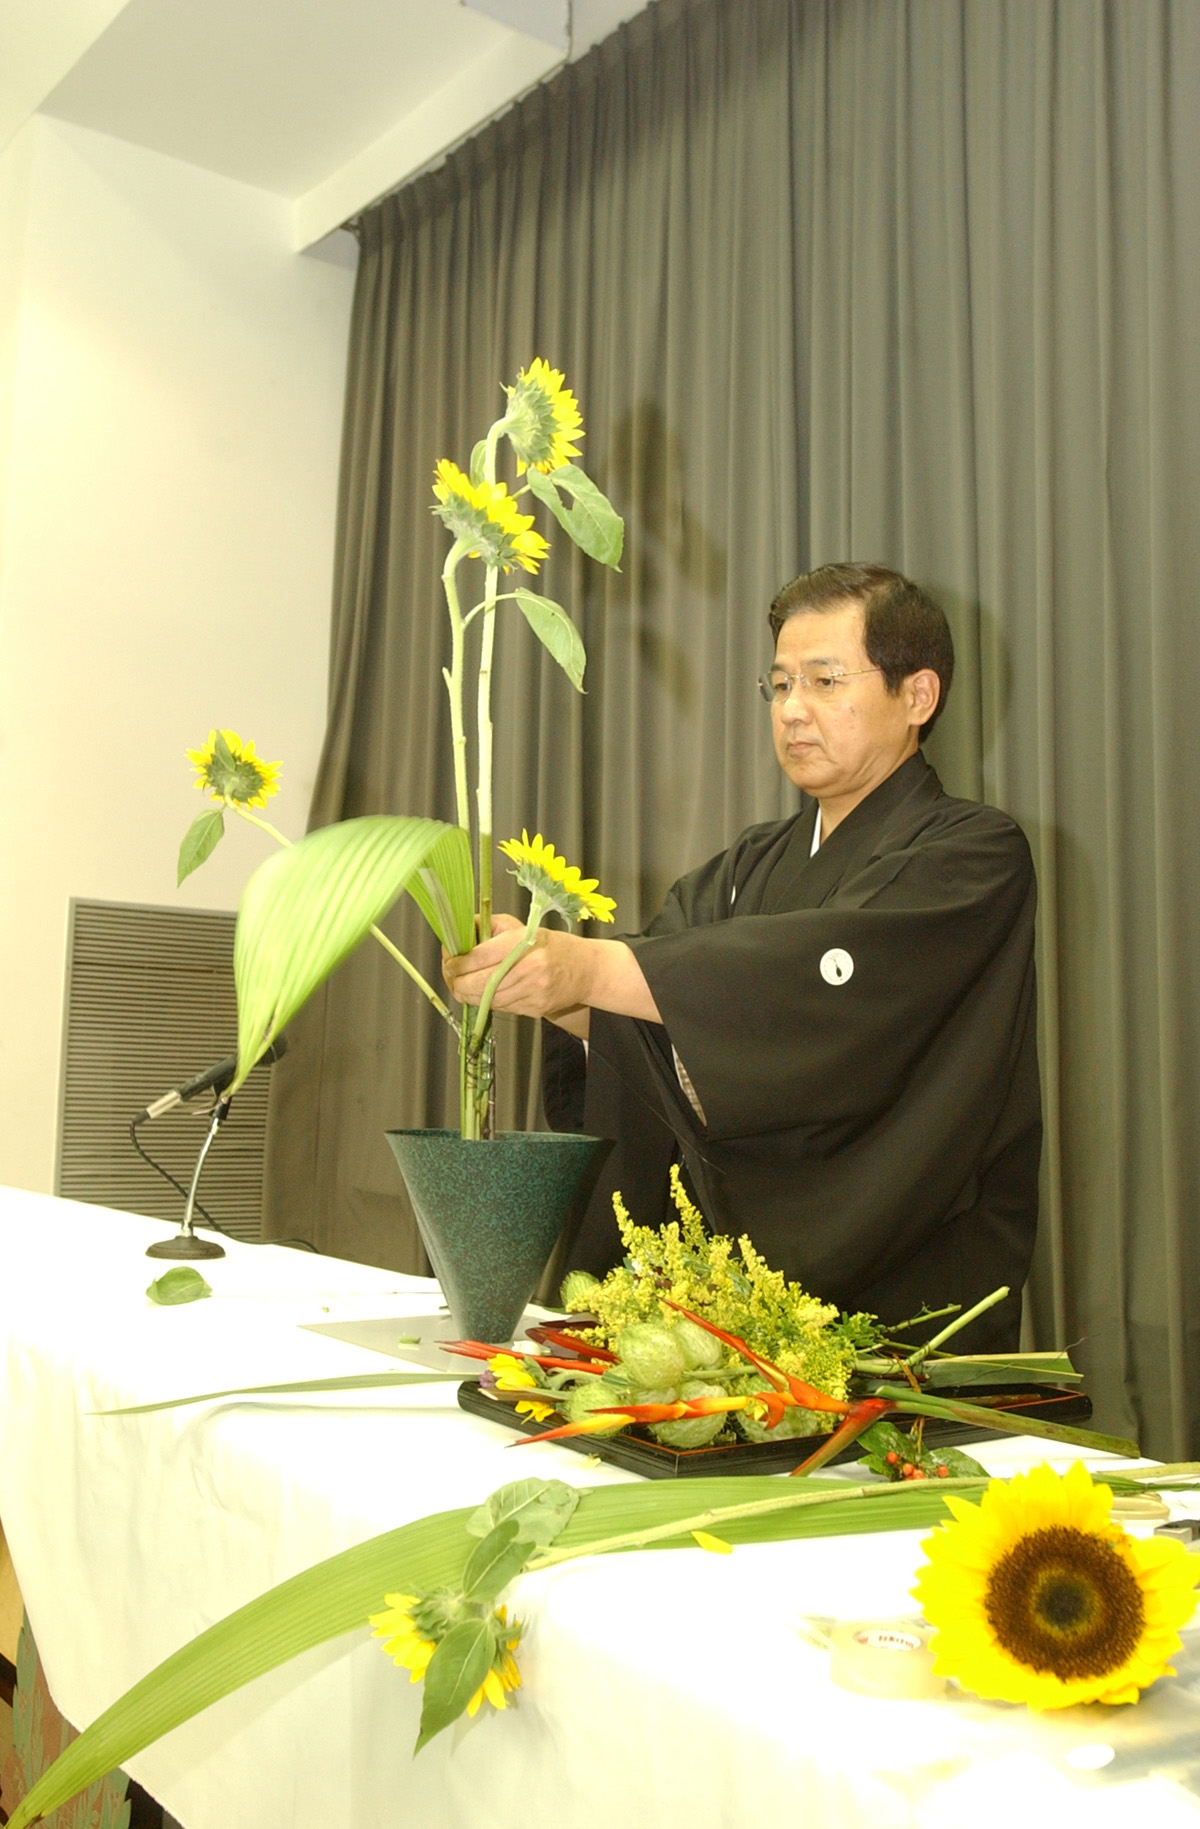 Exposio de Ikebana ocorrida na Assemblia, em 2005, reuniu diversas associaes de cultura japonesa<a style='float:right;color:#ccc' href='https://www3.al.sp.gov.br/repositorio/noticia/04-2008/ikebana.jpg' target=_blank><i class='bi bi-zoom-in'></i> Clique para ver a imagem </a>